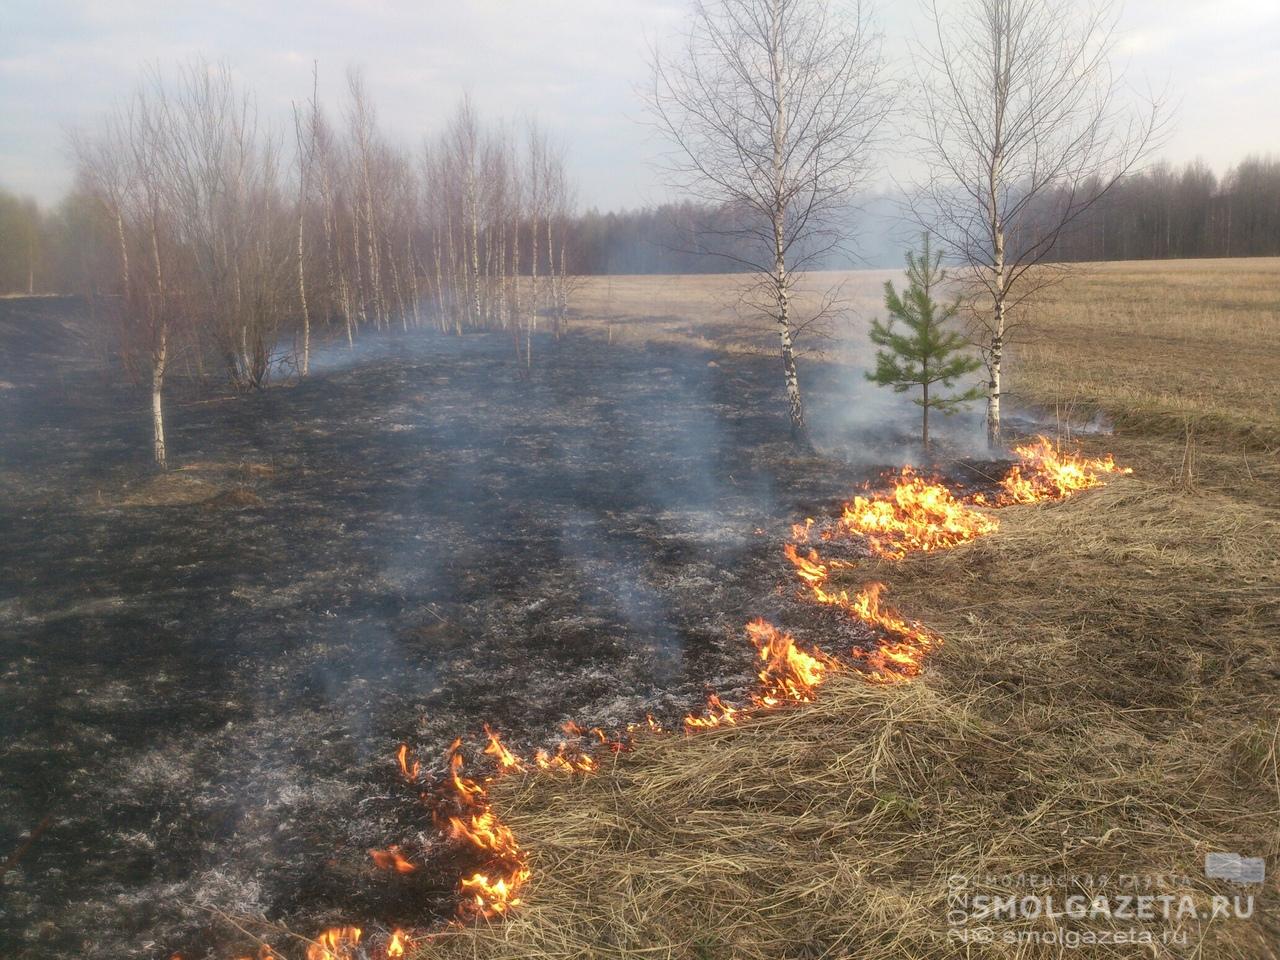 58 выездов на возгорания сухой травы совершили за сутки смоленские спасатели